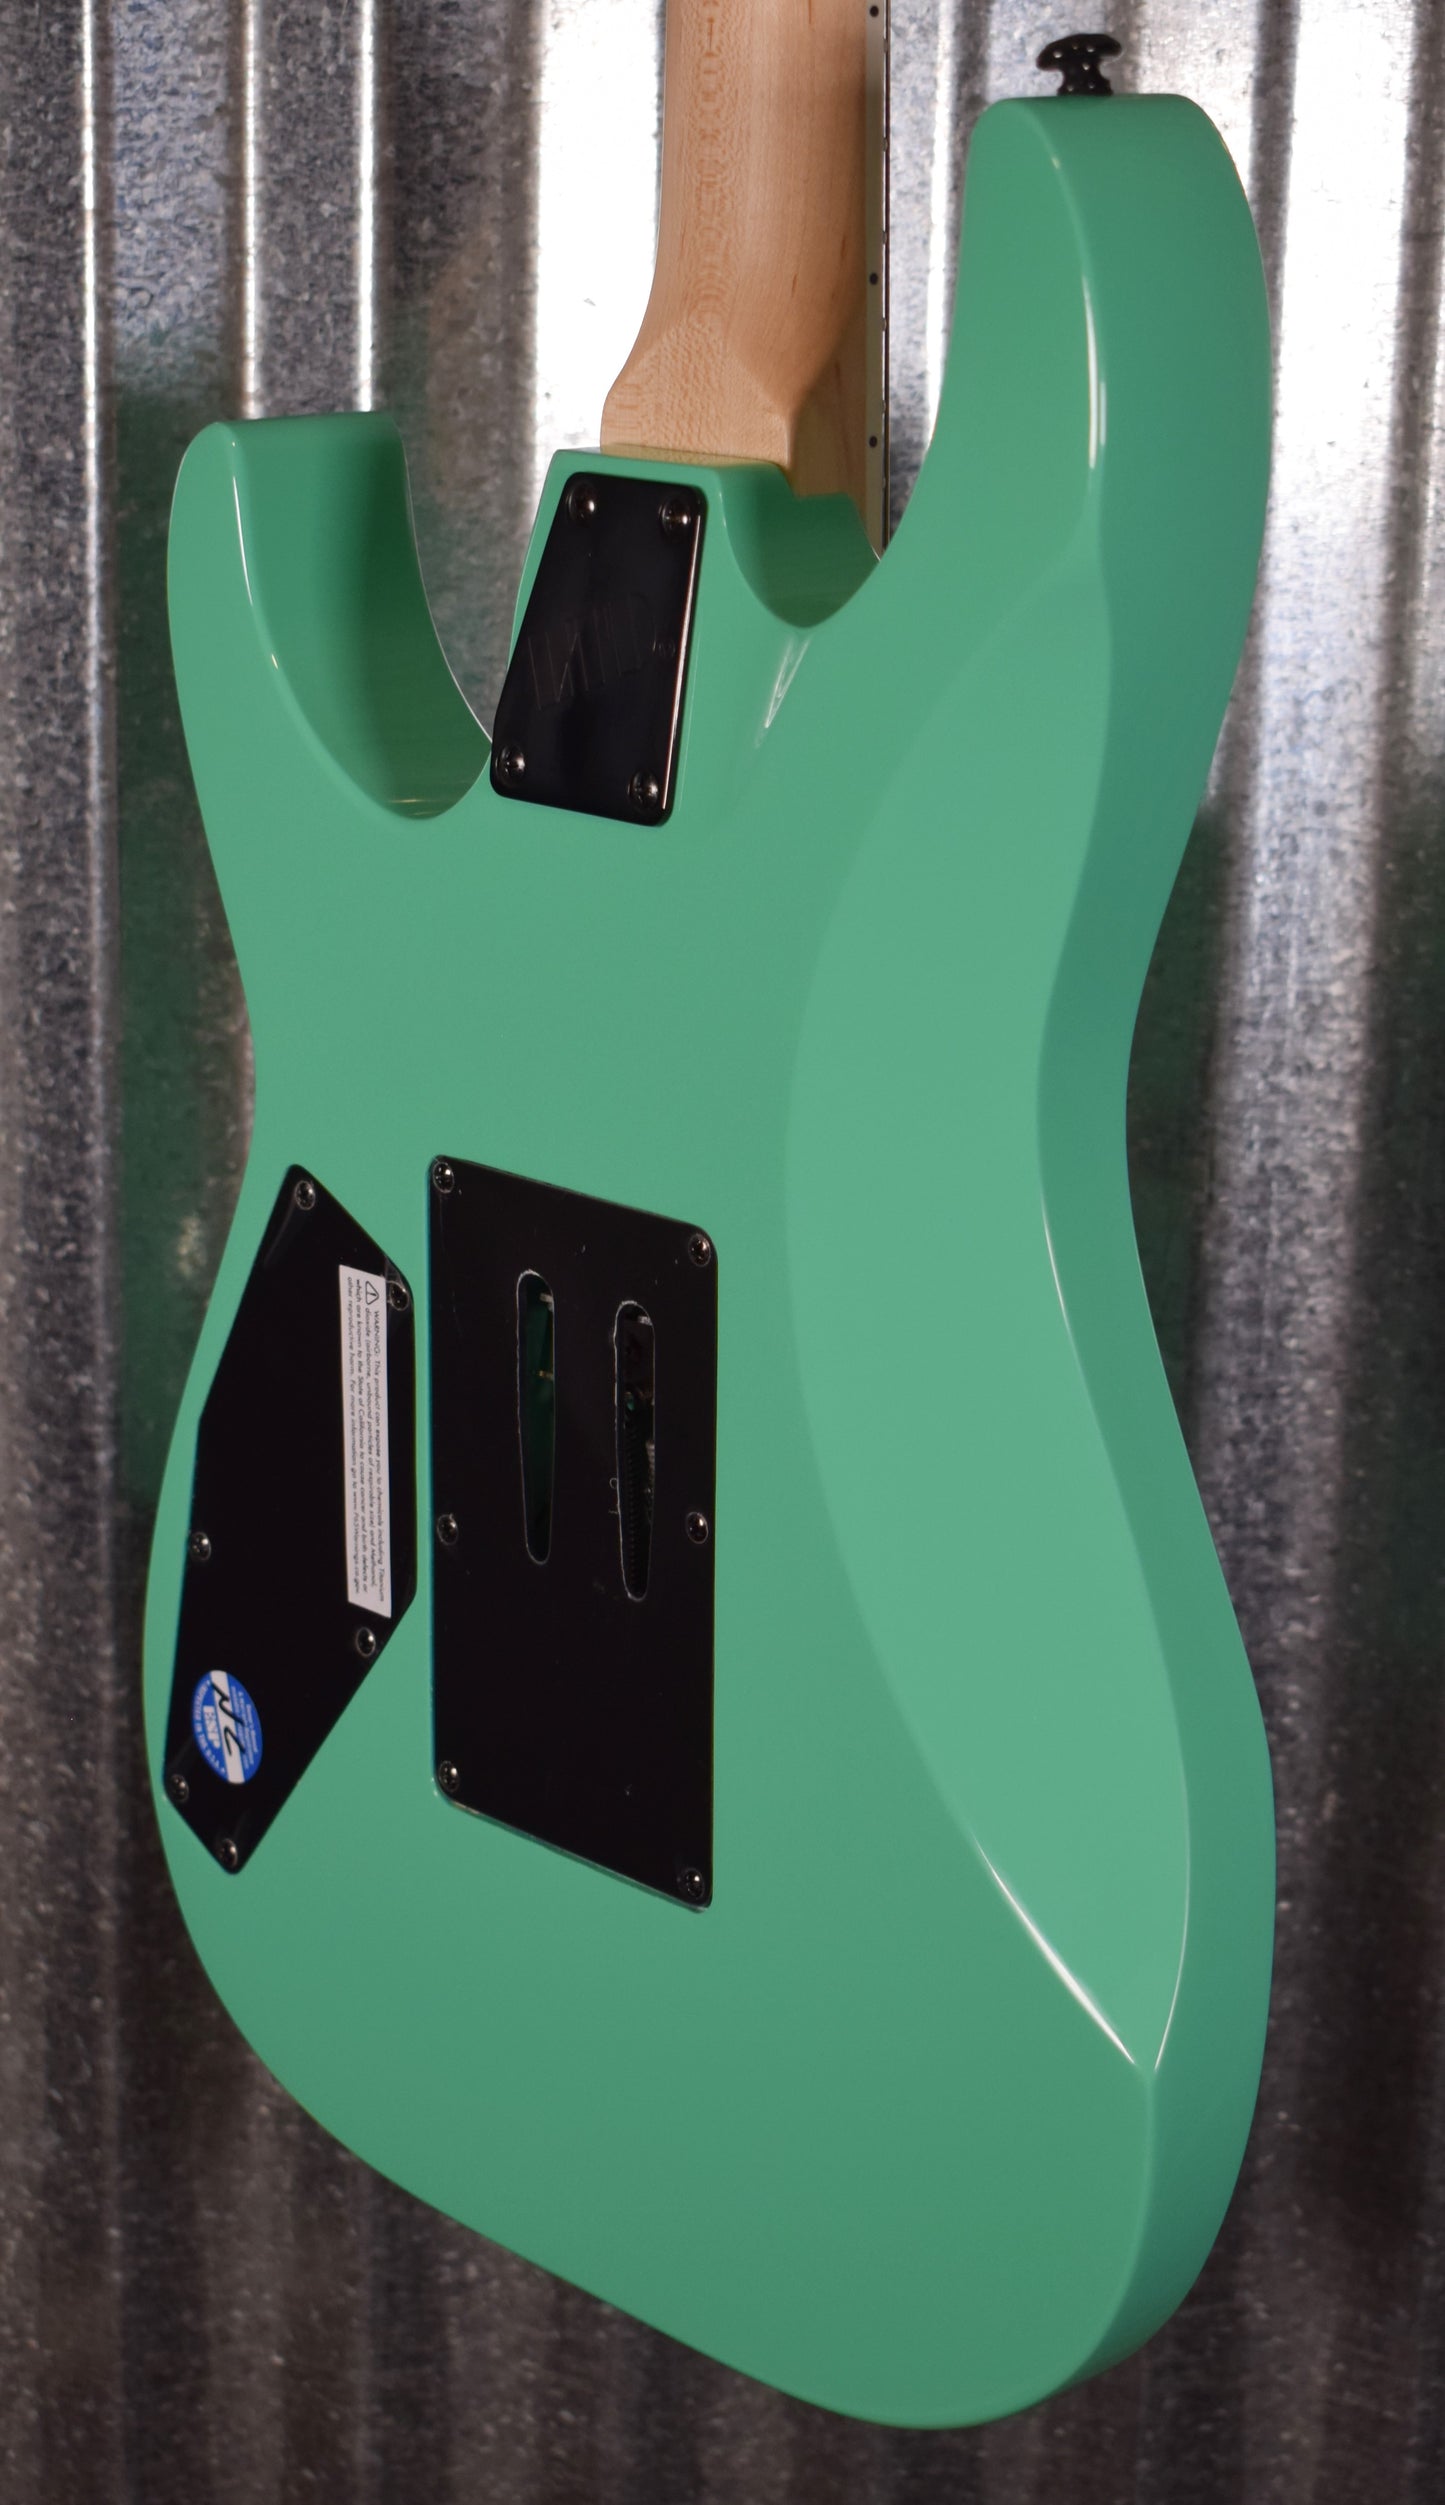 ESP LTD Mirage Deluxe '87 Turquoise Guitar & Case LMIRAGEDX87TURQ #0155